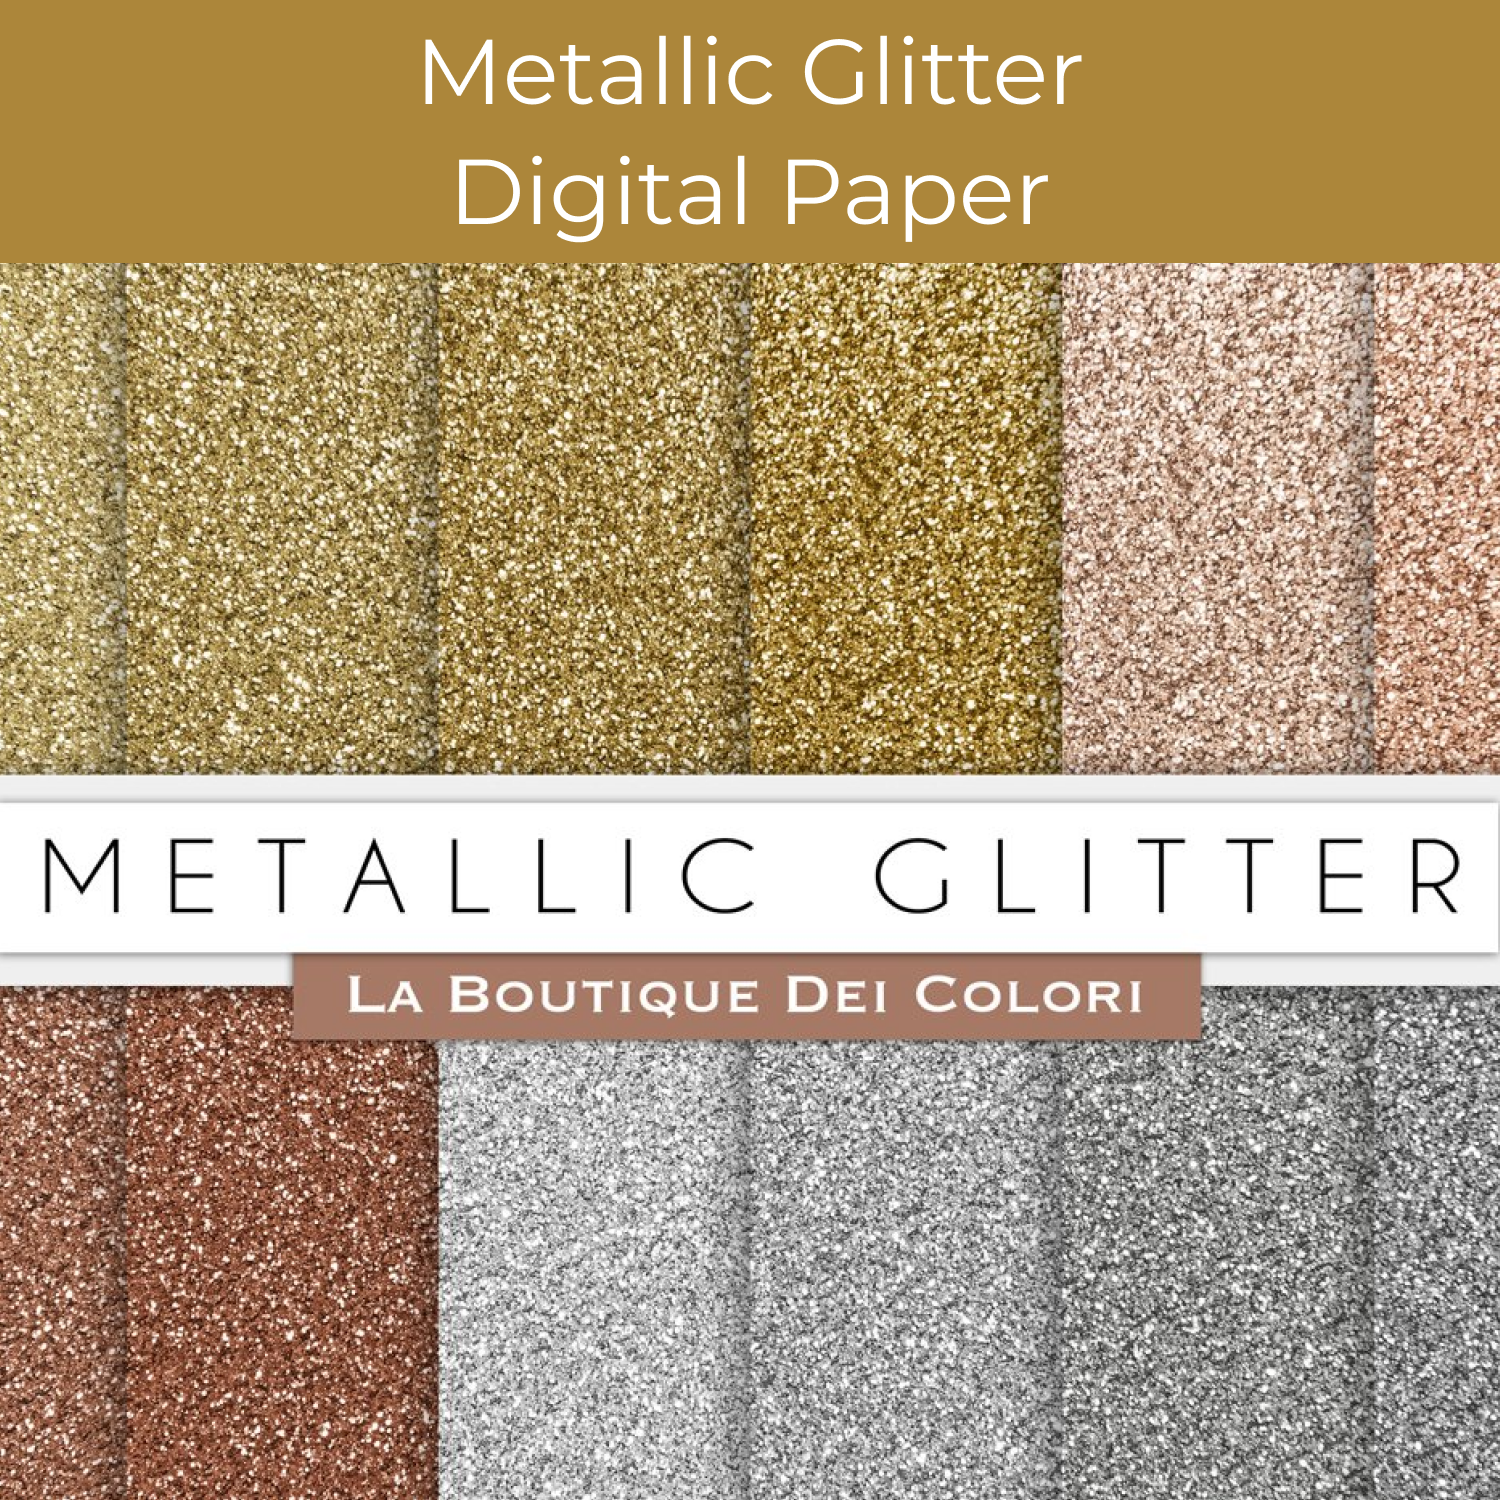 Metallic Glitter Digital Paper cover.